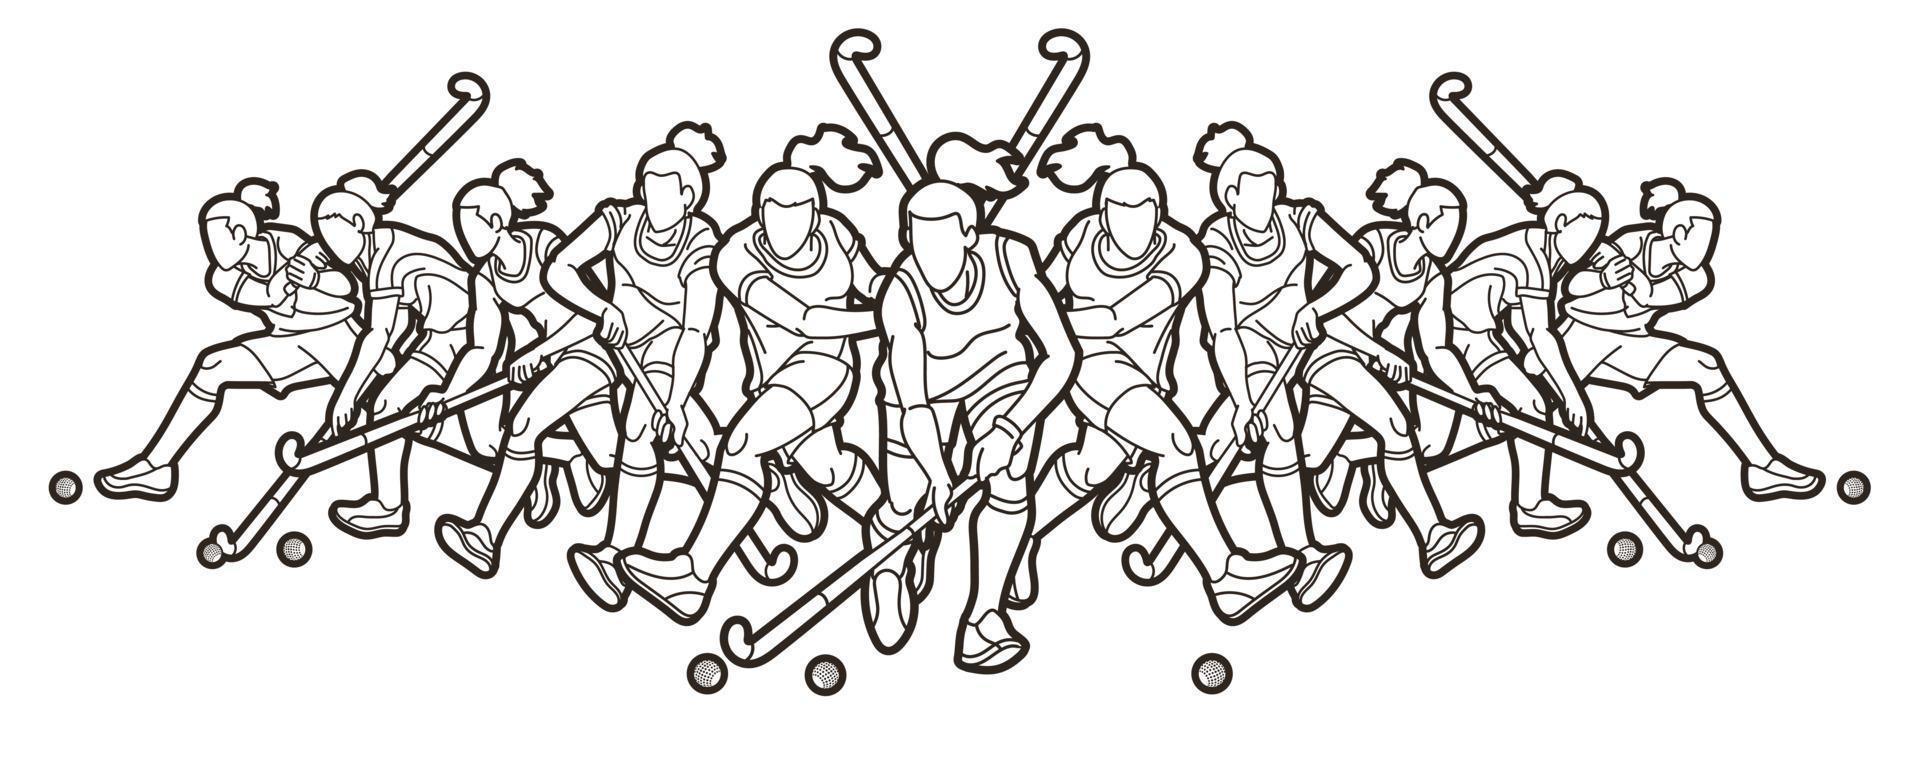 Esbozar un grupo de mujeres jugadoras de deporte de hockey sobre césped vector